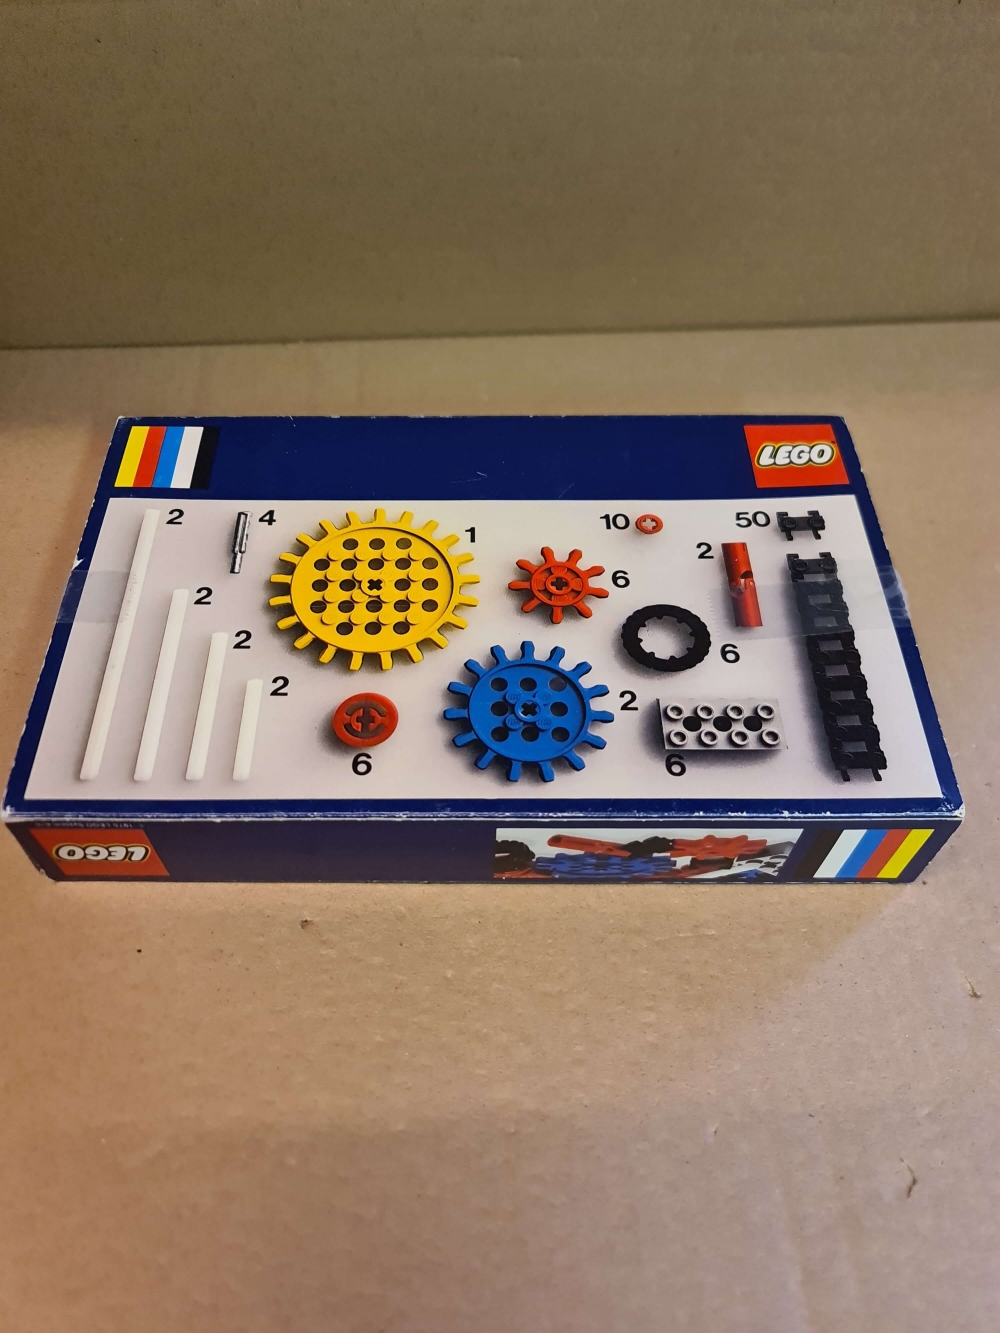 Sett 812 fra Lego : Universal Buidling Set serien.

Meget pent. 
Komplett med eske og manual.